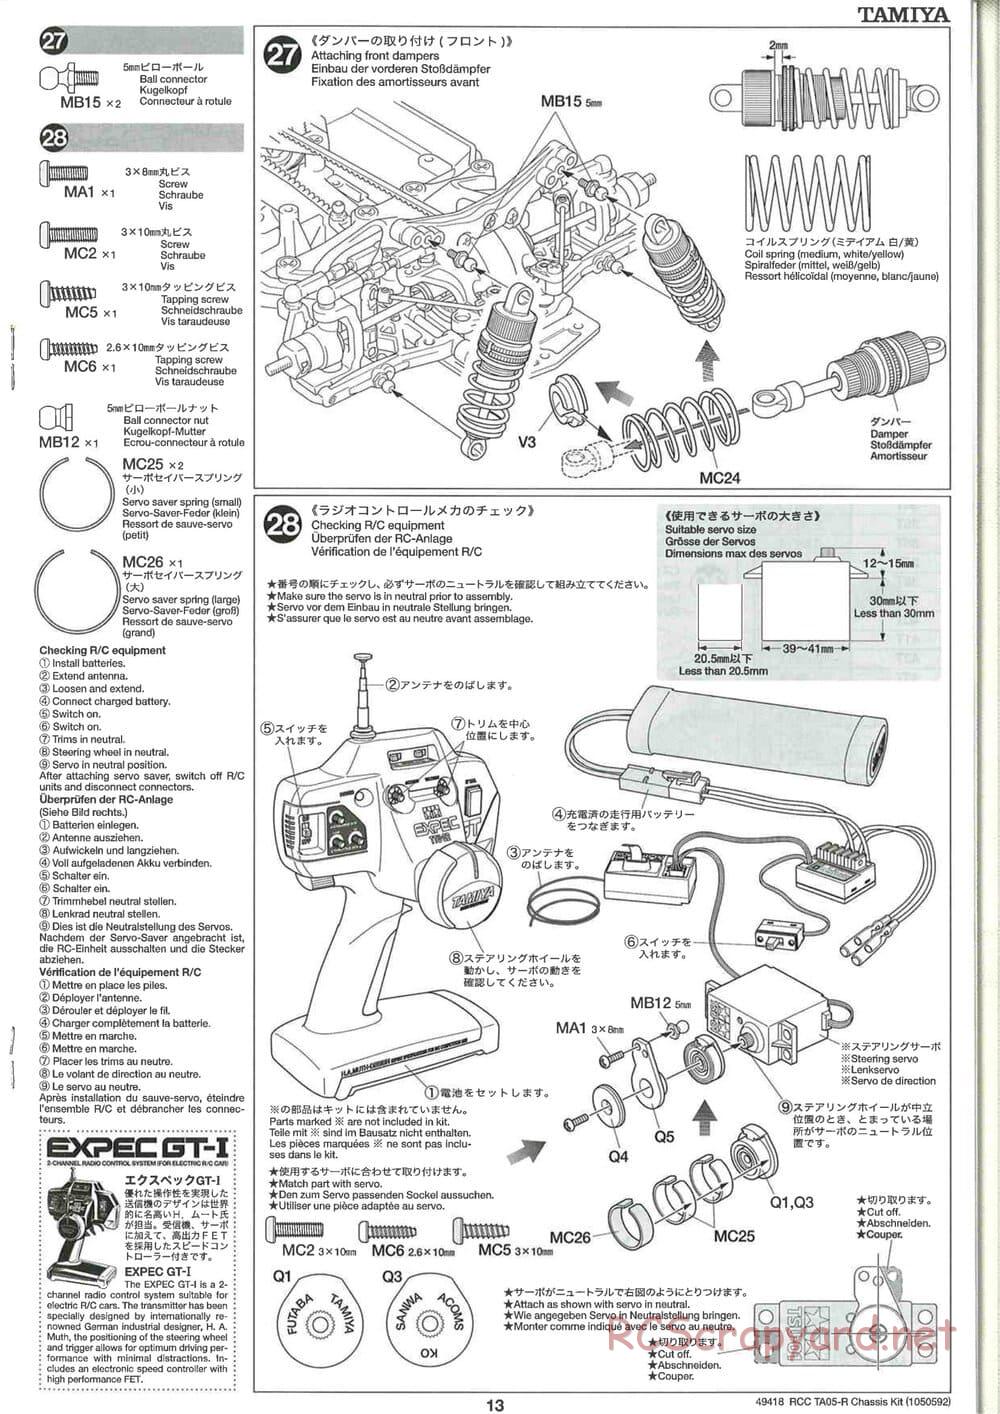 Tamiya - TA05-R Chassis - Manual - Page 13